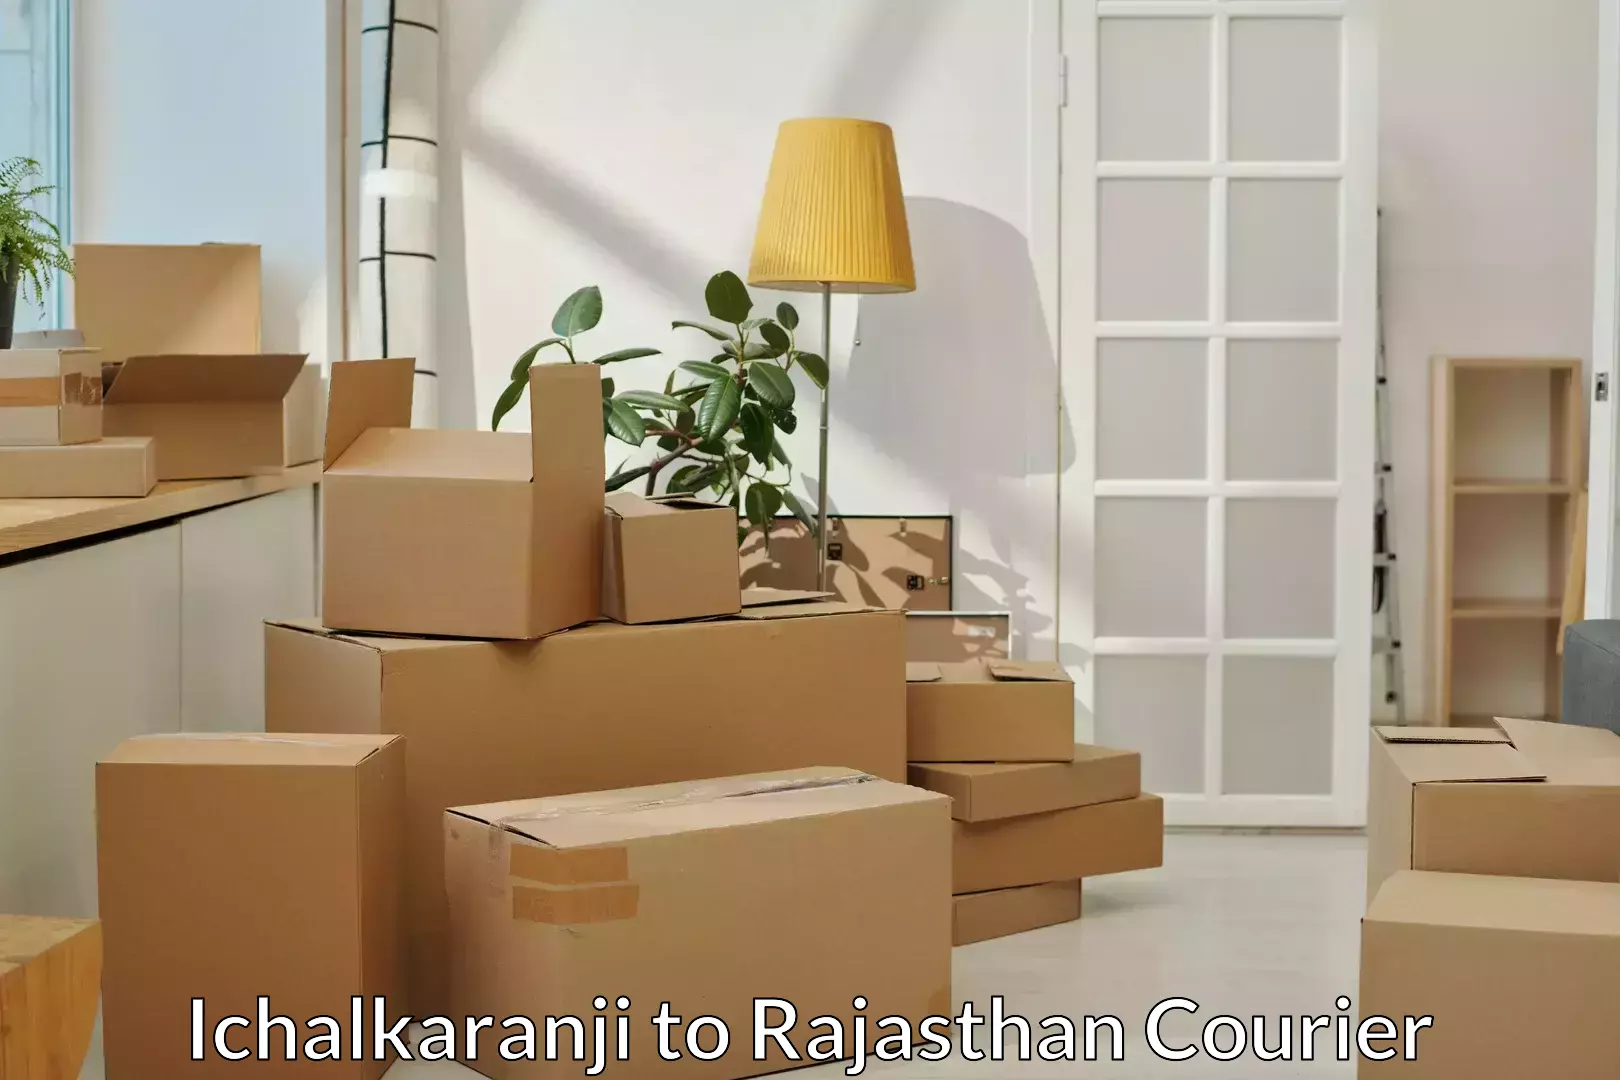 Furniture transport experts Ichalkaranji to Rajasthan